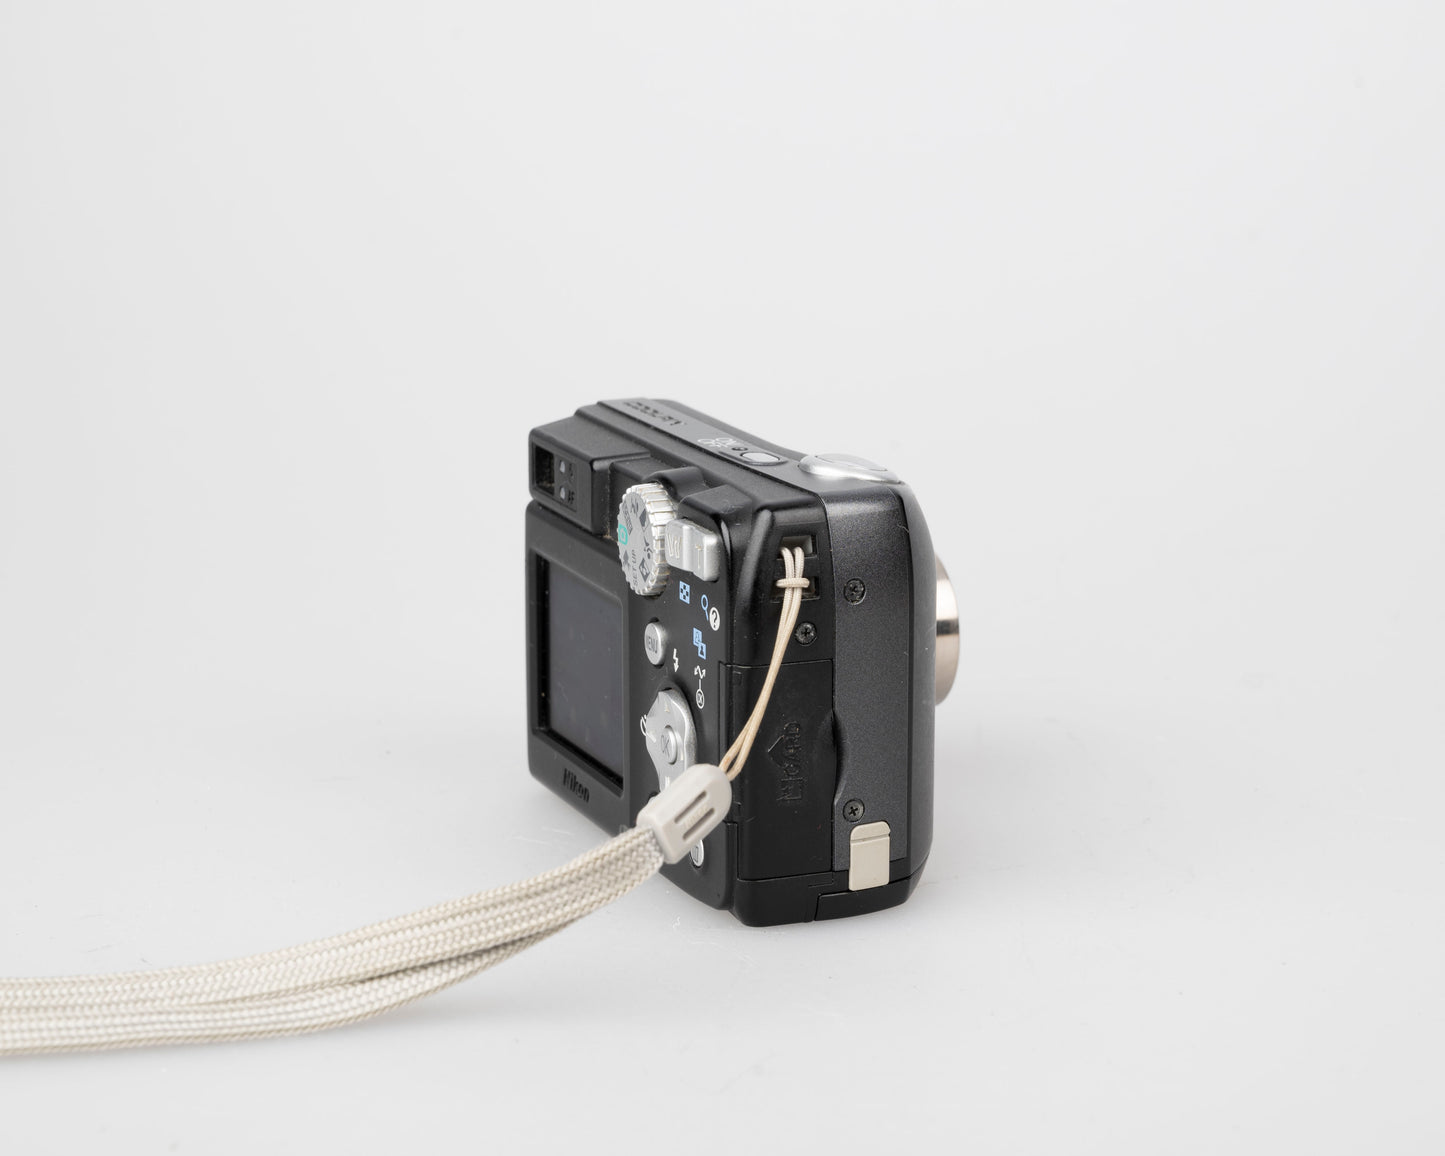 Appareil photo Nikon Coolpix 7600 capteur CCD 7MP avec chargeur de batterie + manuel en français (utilise des piles AA)